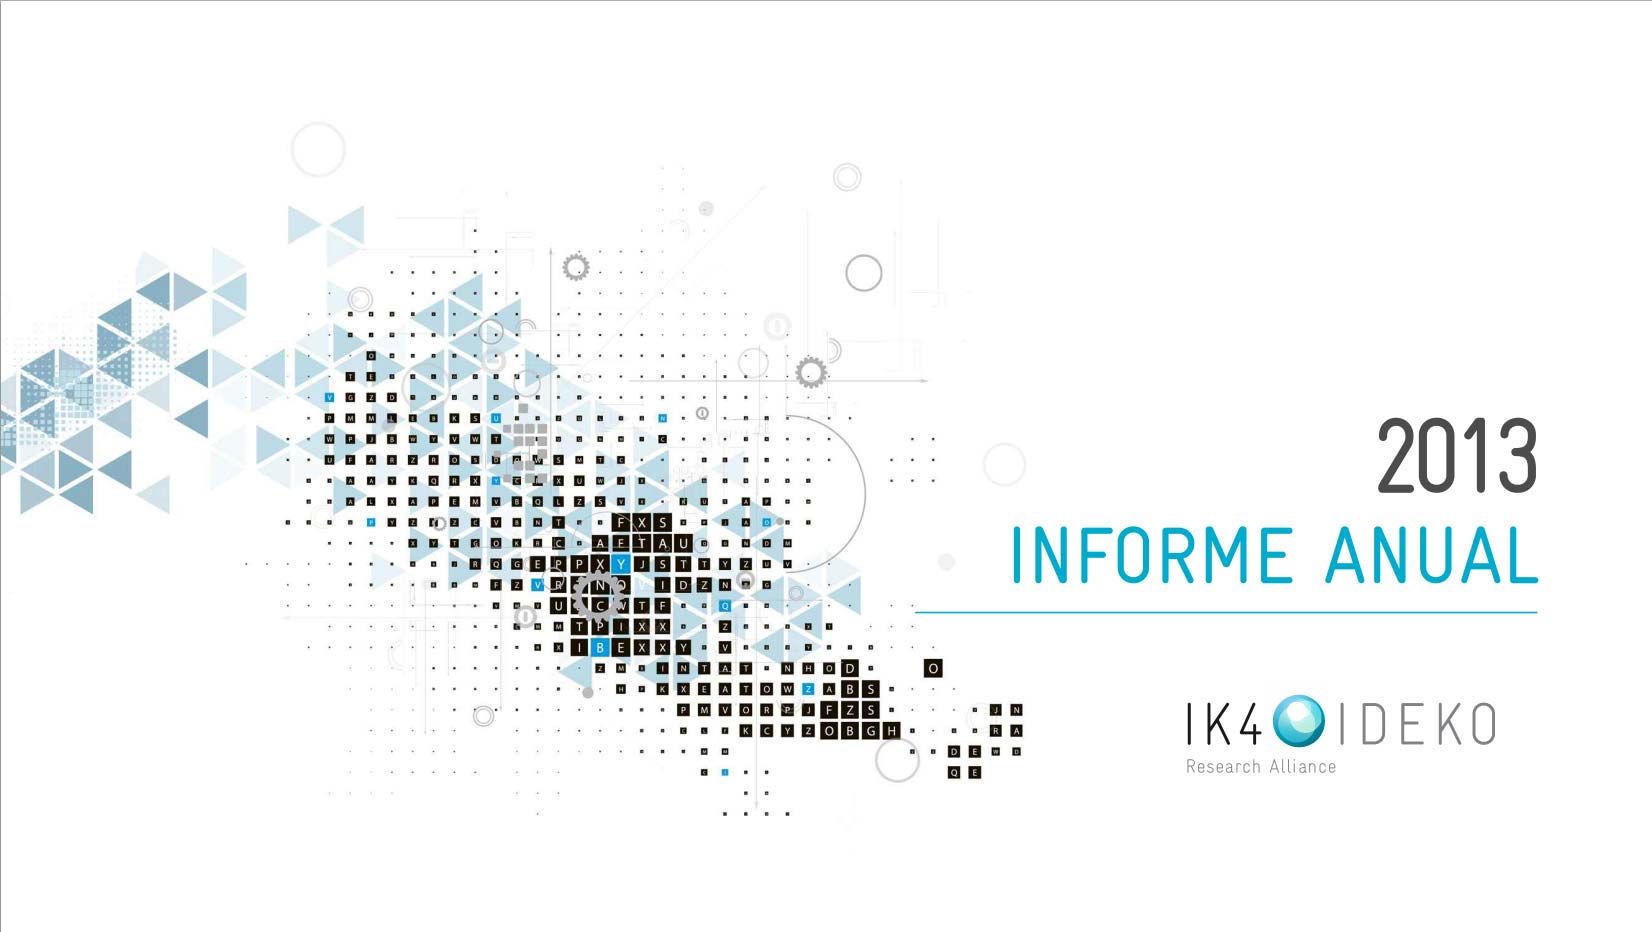 IK4-IDEKO ha publicado su Memoria Anual correspondiente al ejercicio 2013